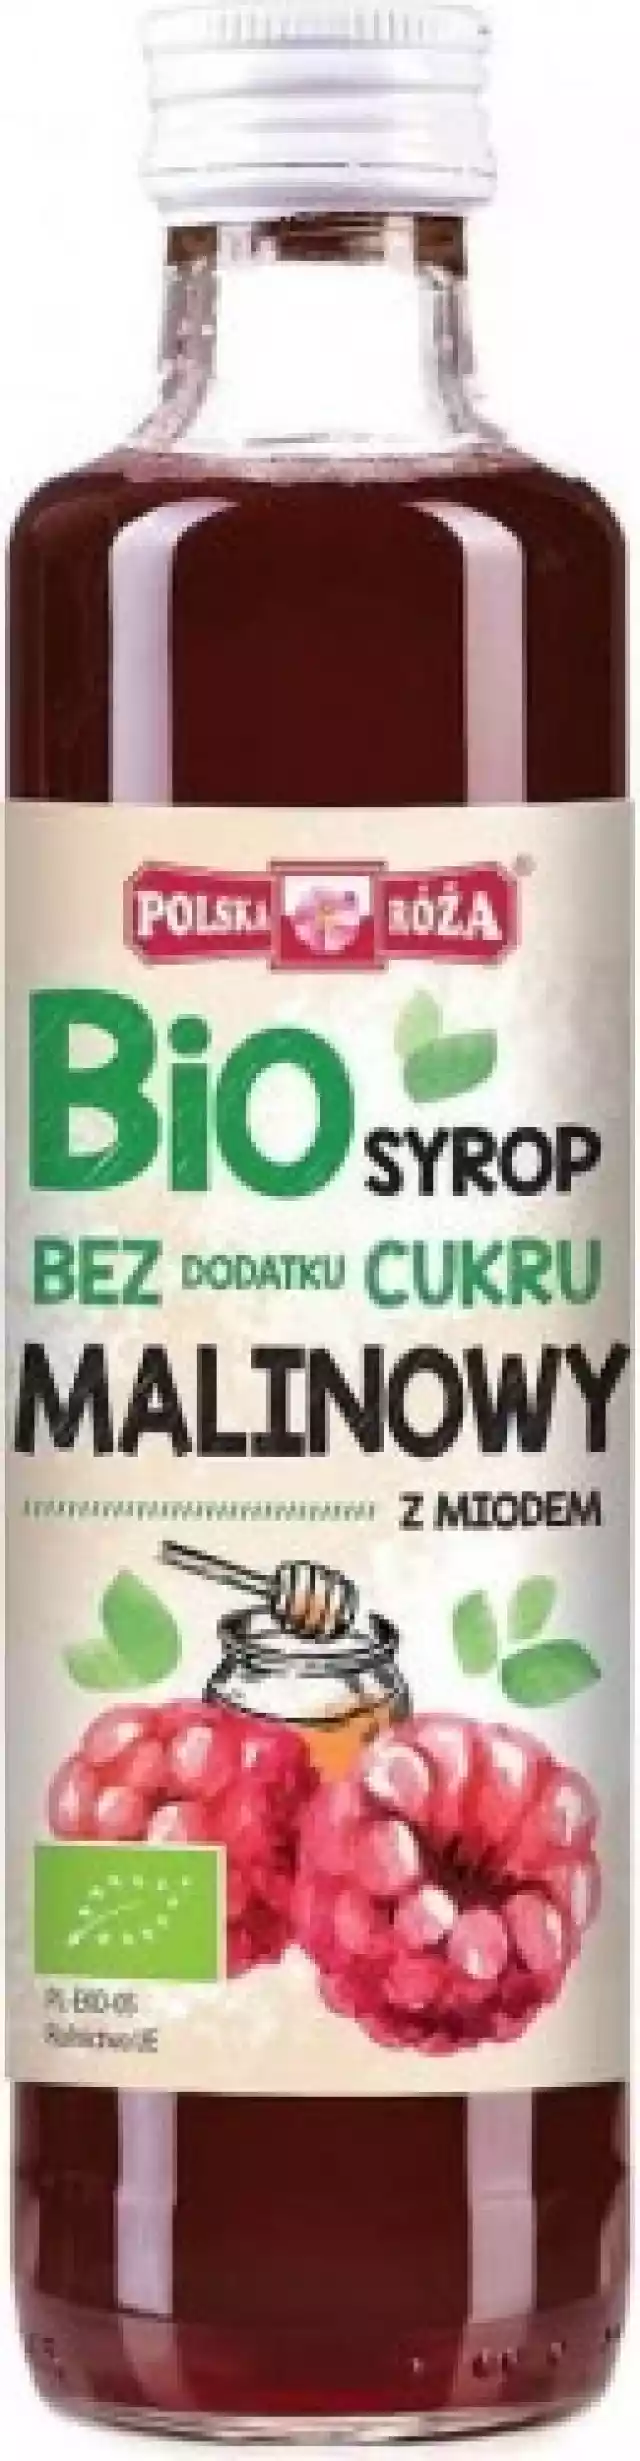 Syrop Malinowy Bez Cukru Bio 250 Ml Polska Róża